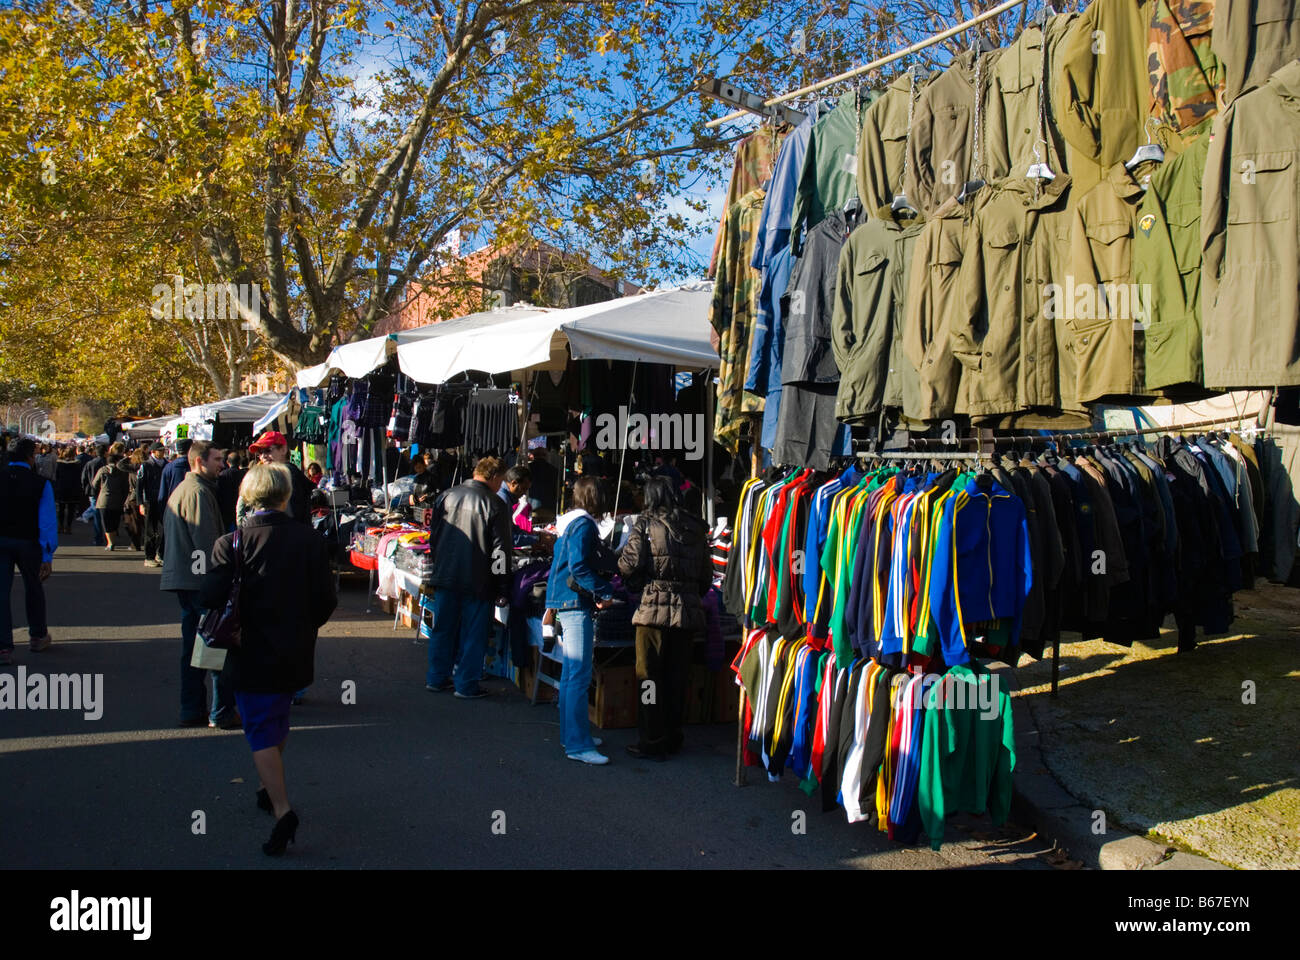 Porta Portese Markt findet am Sonntag in Trastevere Viertel von Rom Italien  Europa Stockfotografie - Alamy